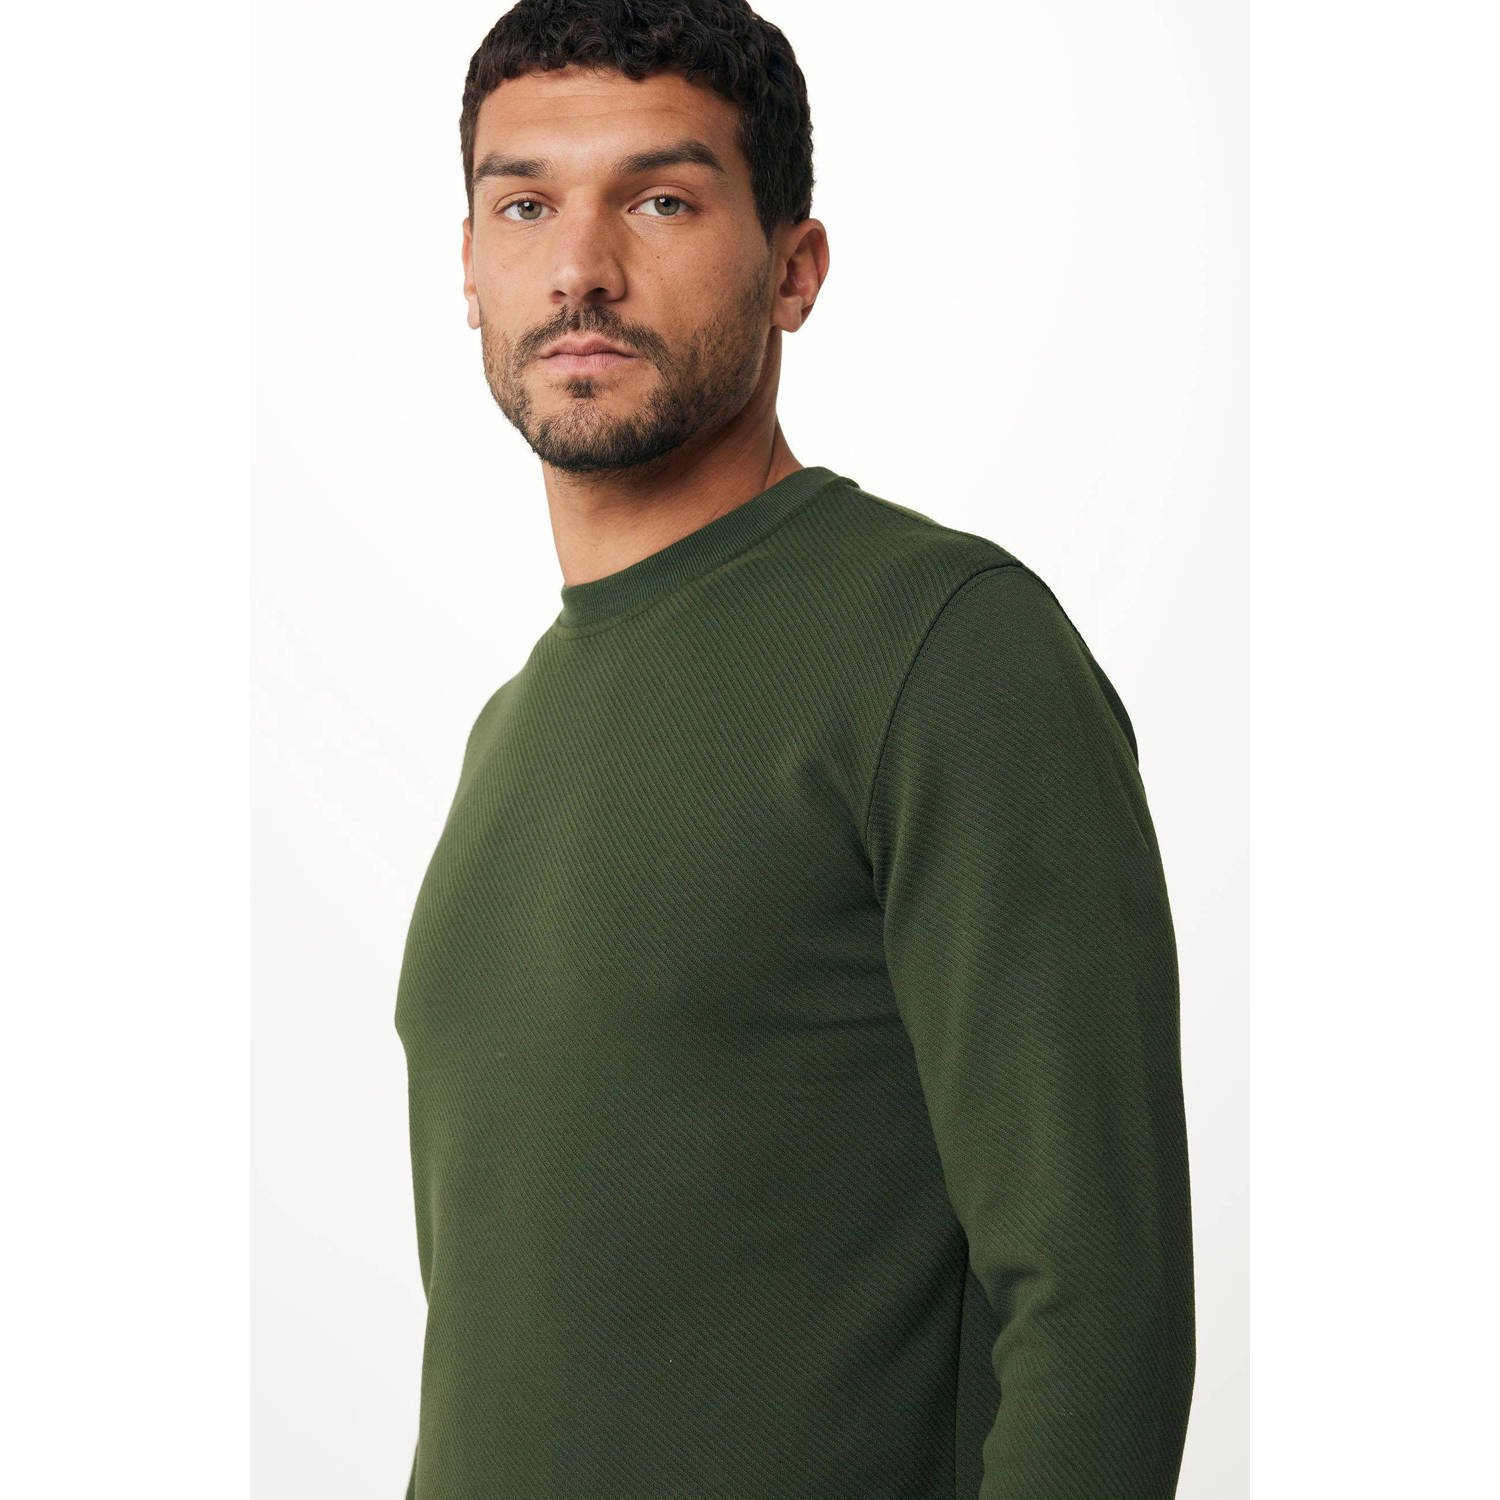 Mexx sweater warm green